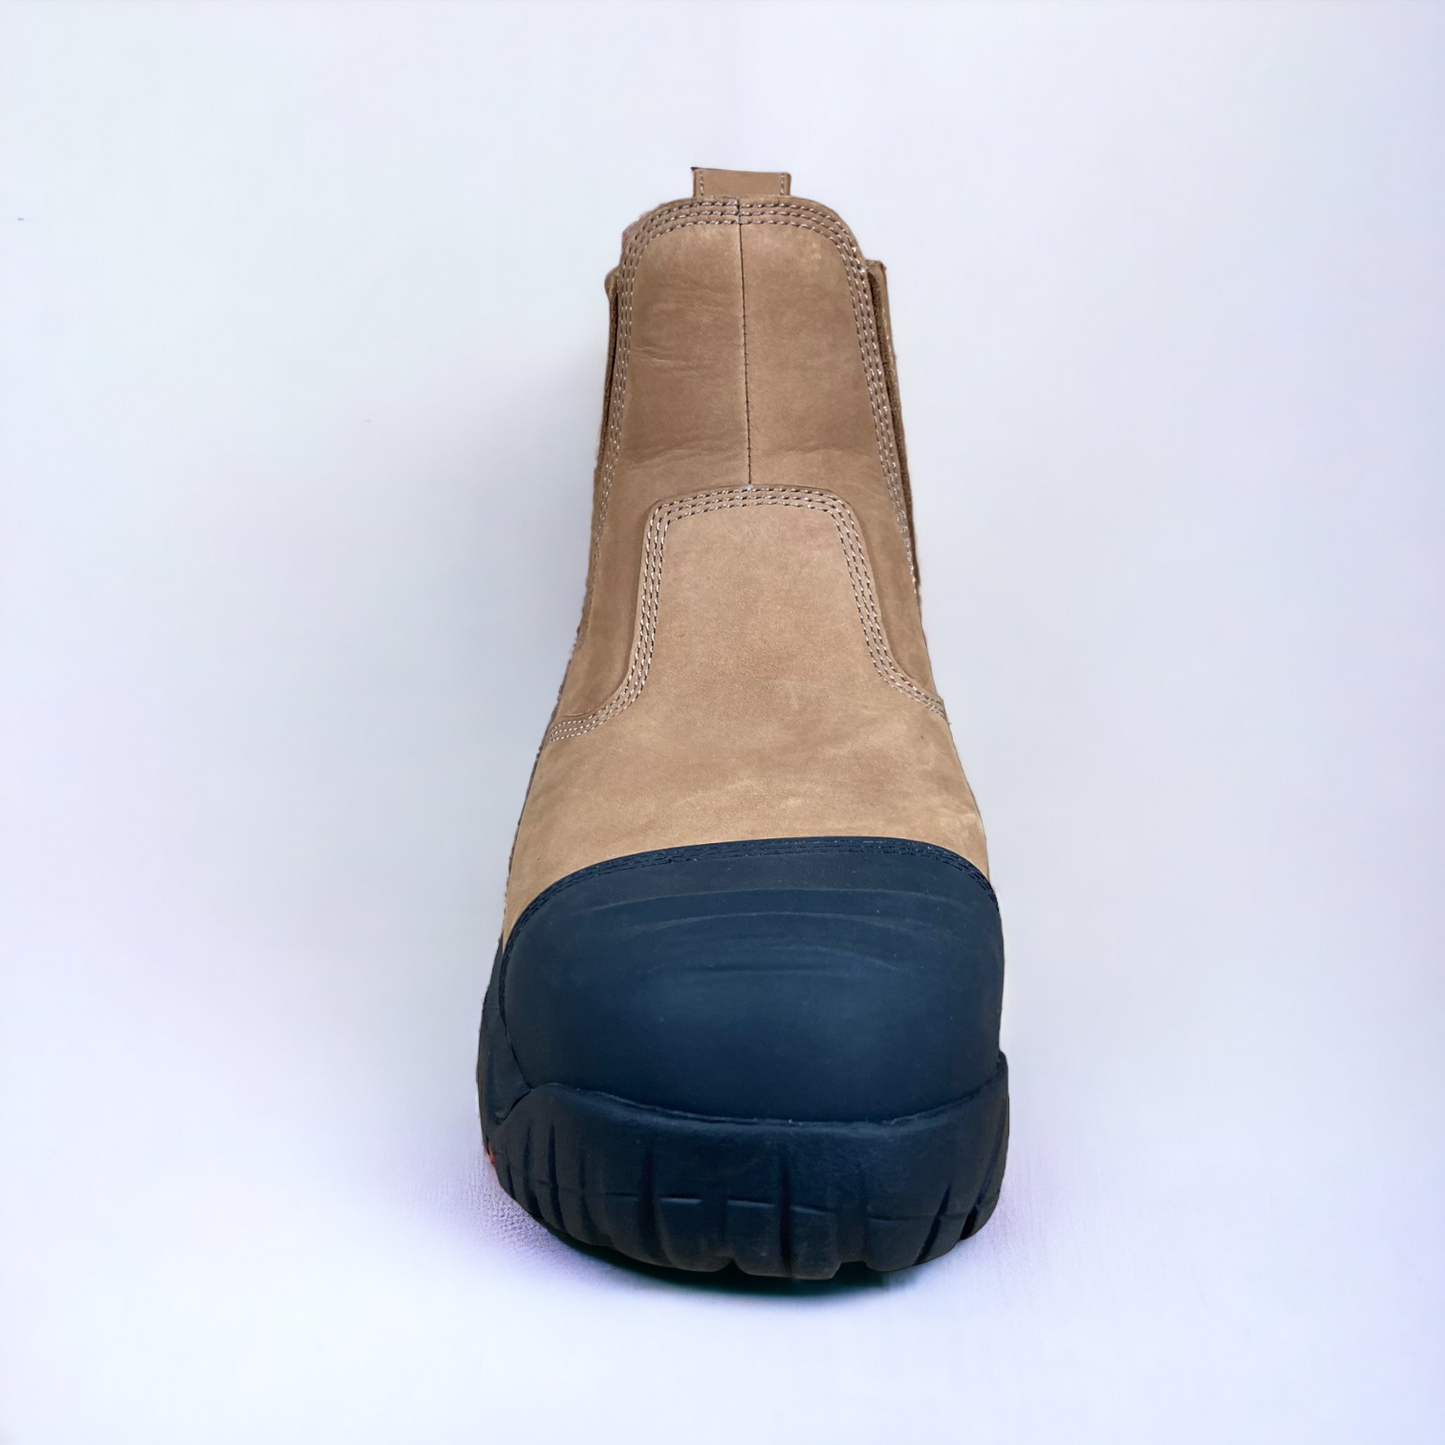 Ergonx Safety Boots Slip On (Hydrogen) Tan